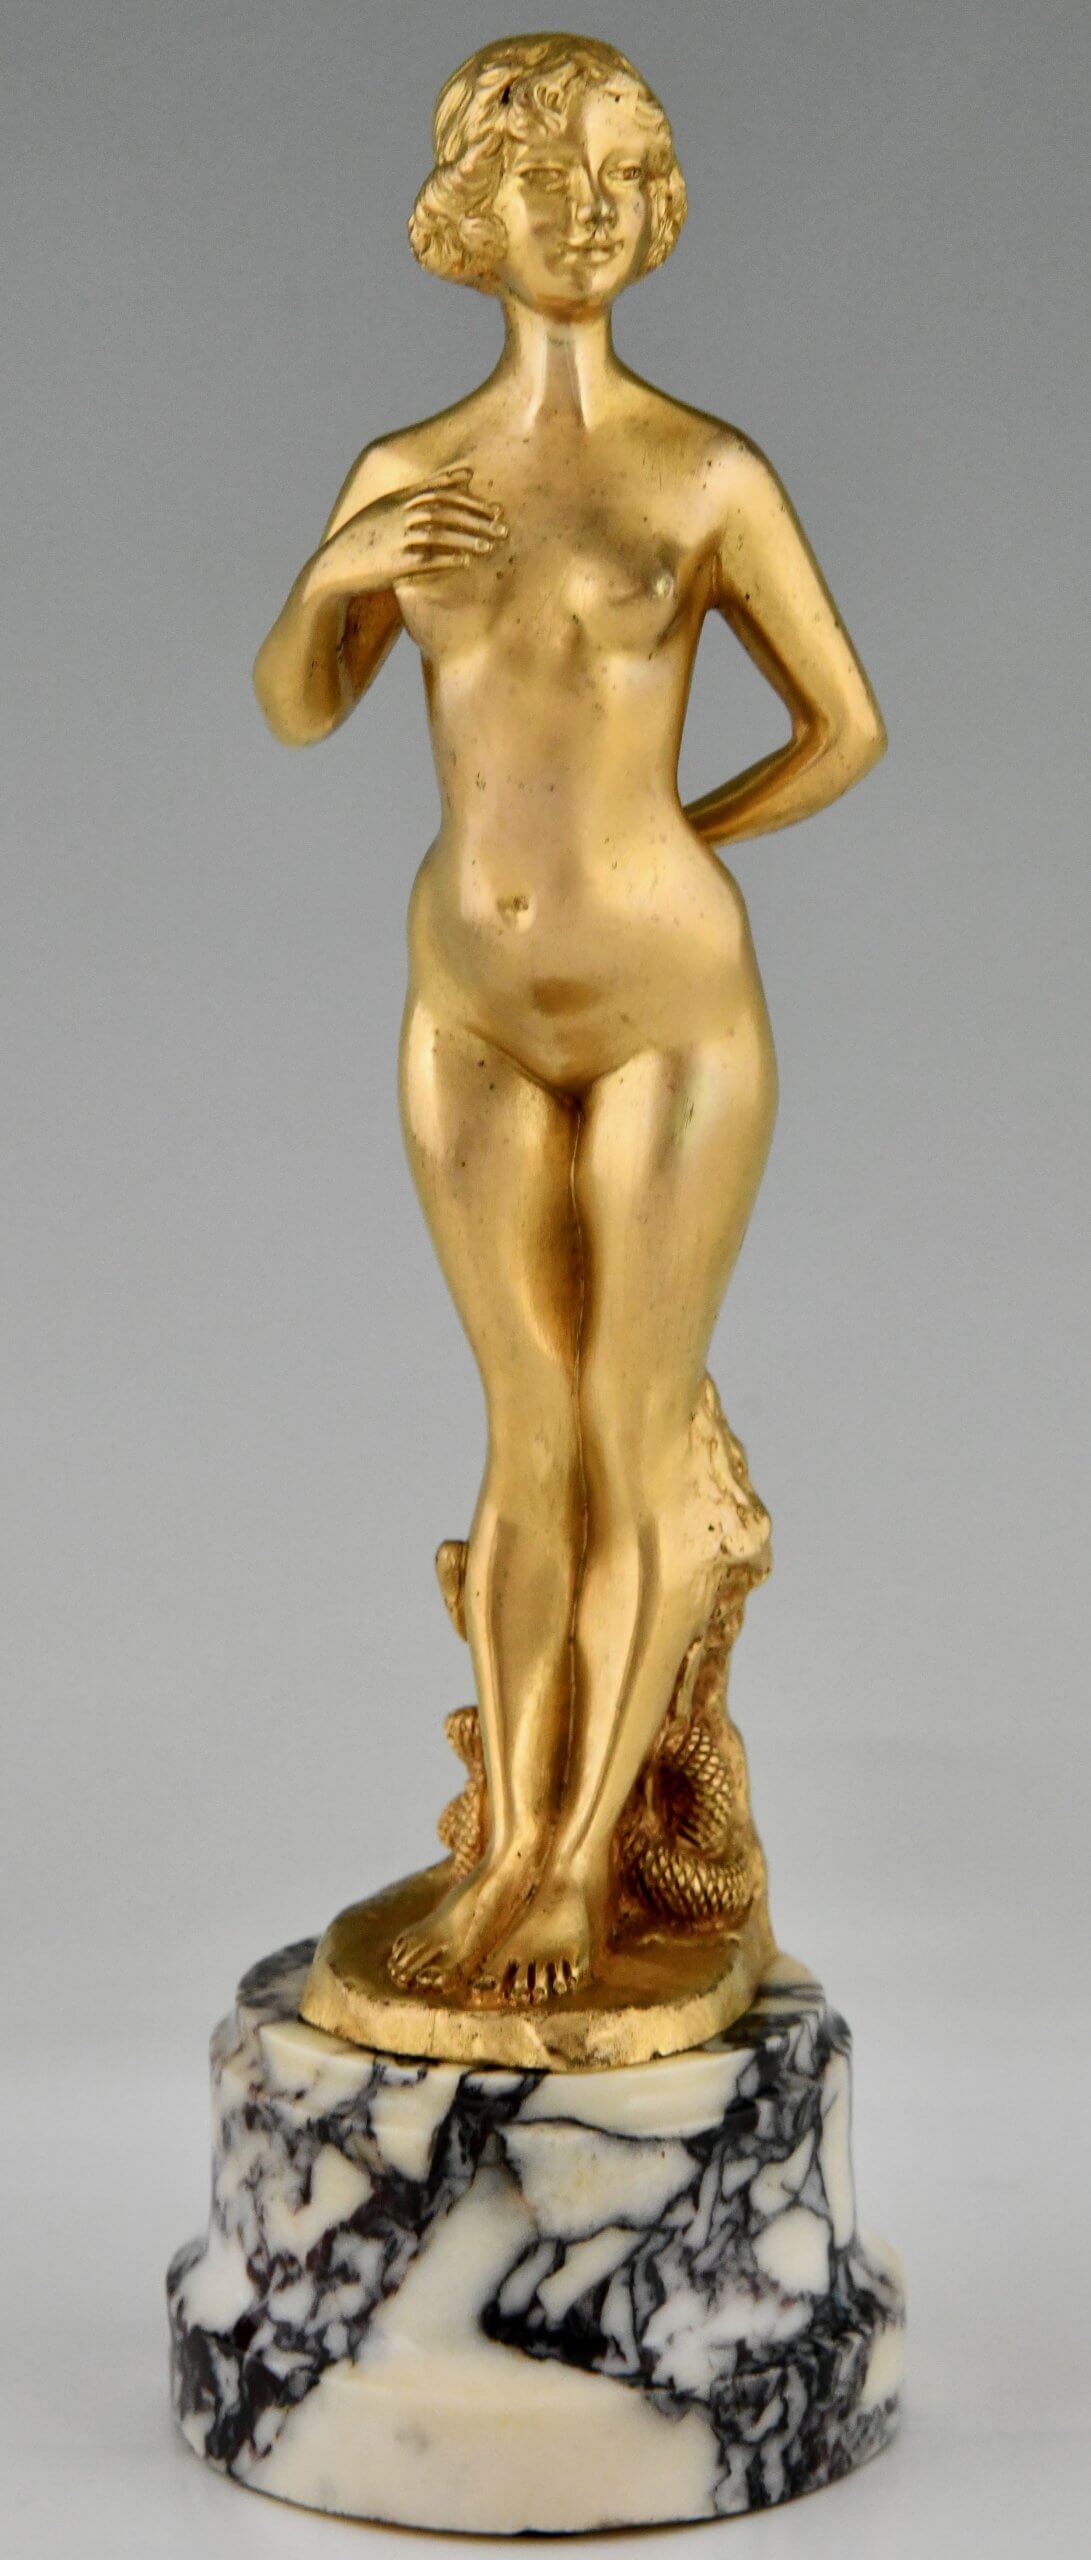 Paar Art Nouveau bronzen sculpturen naakte vrouw